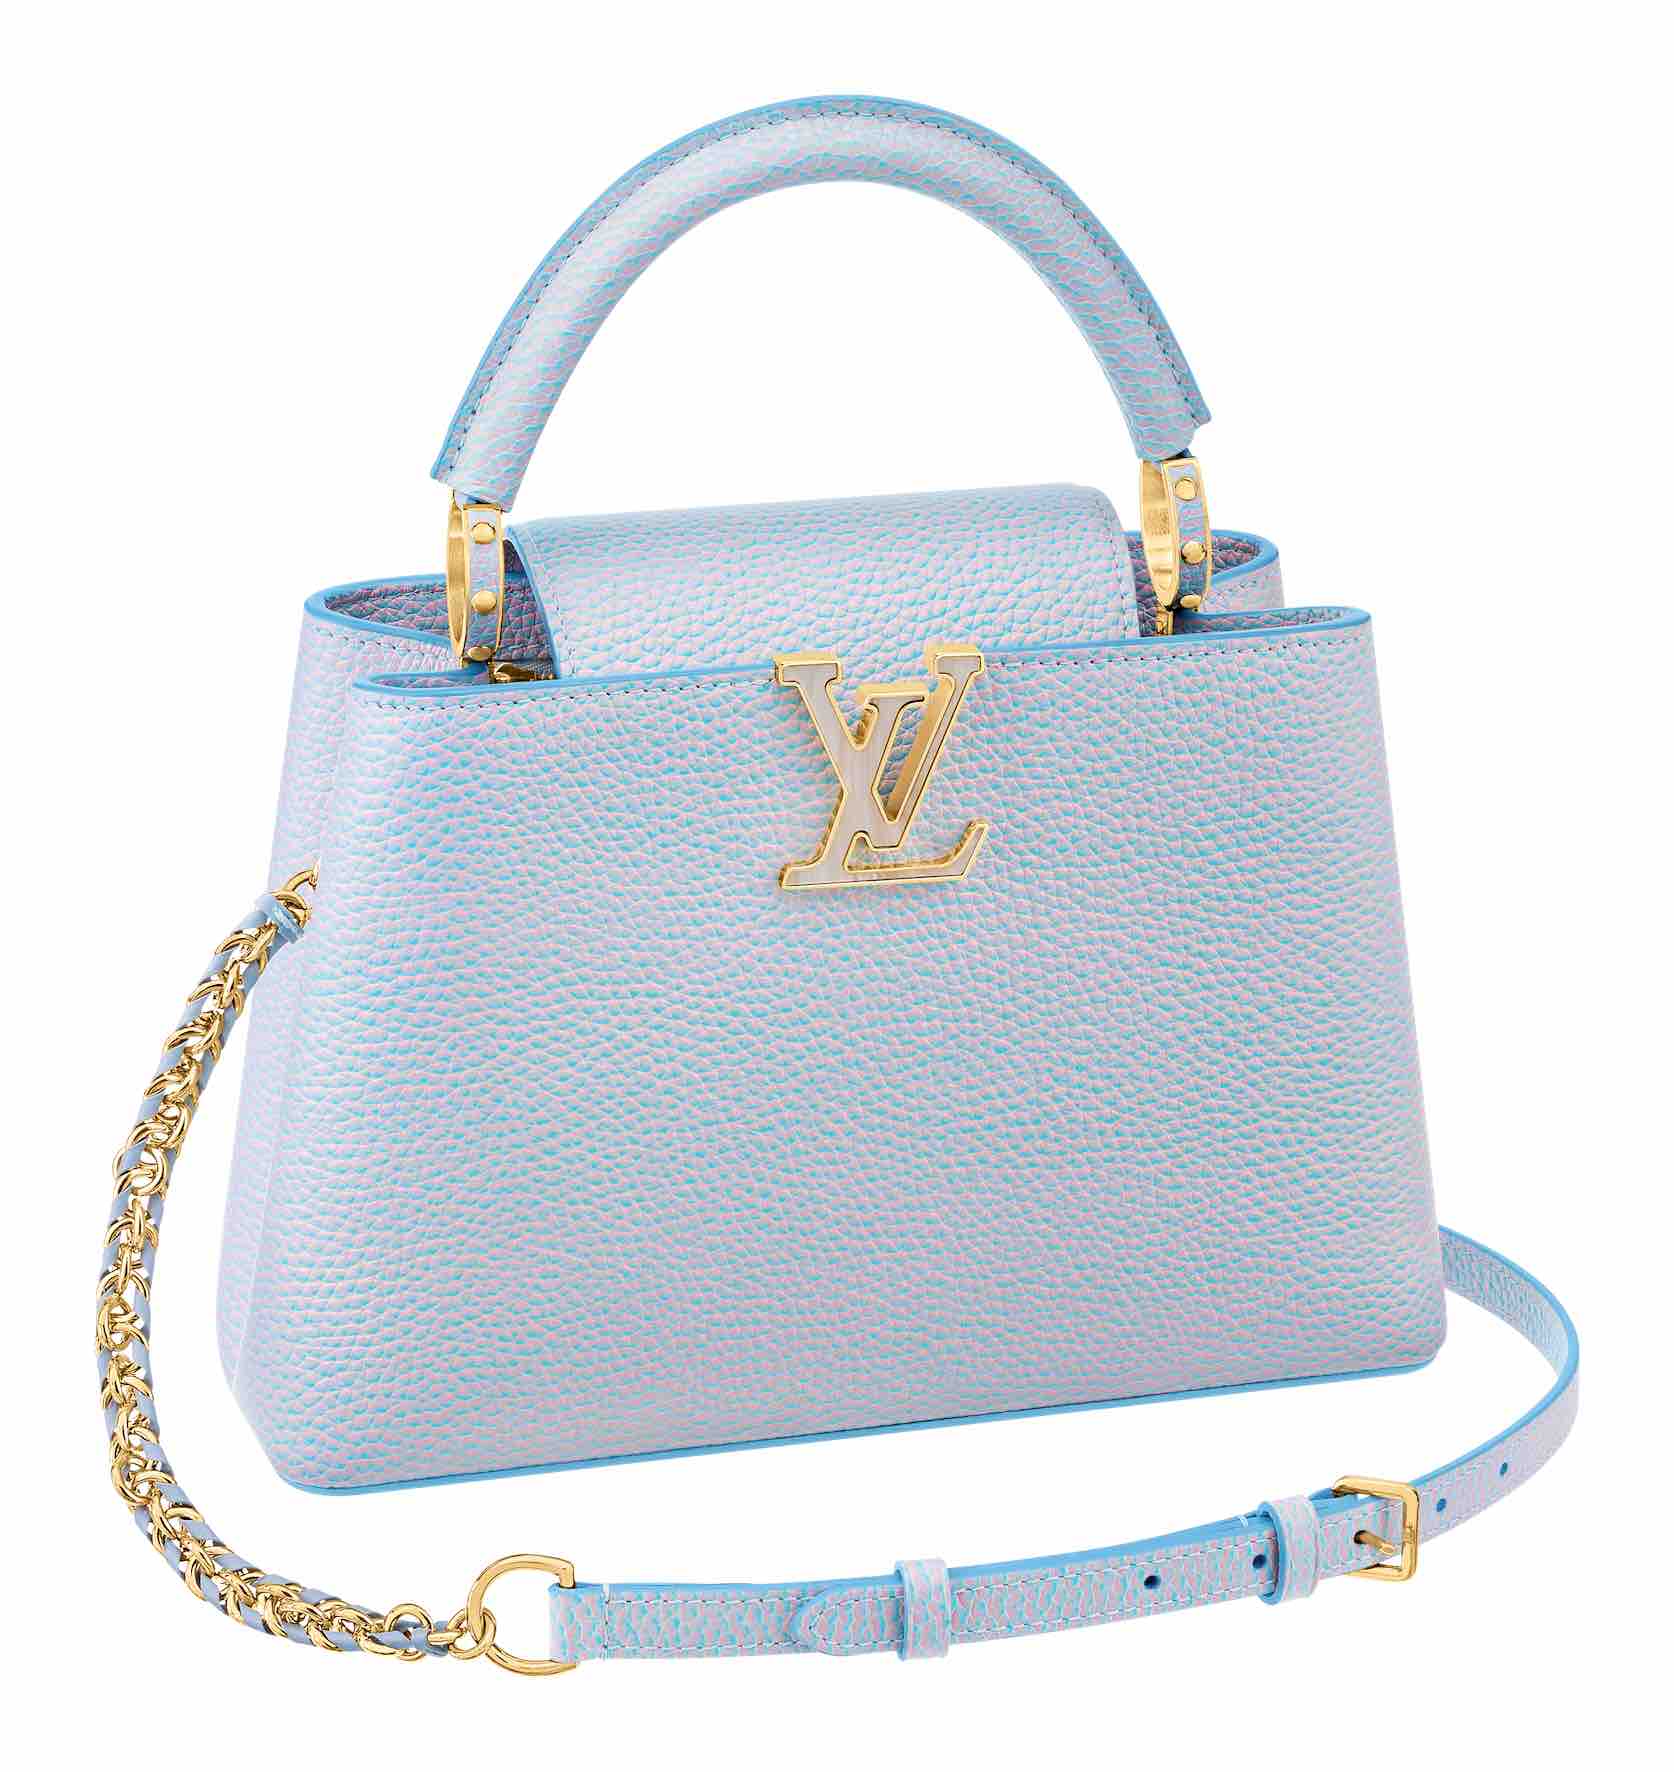 Louis Vuitton choisit une princesse pour incarner ses nouveaux sacs  Capucines 